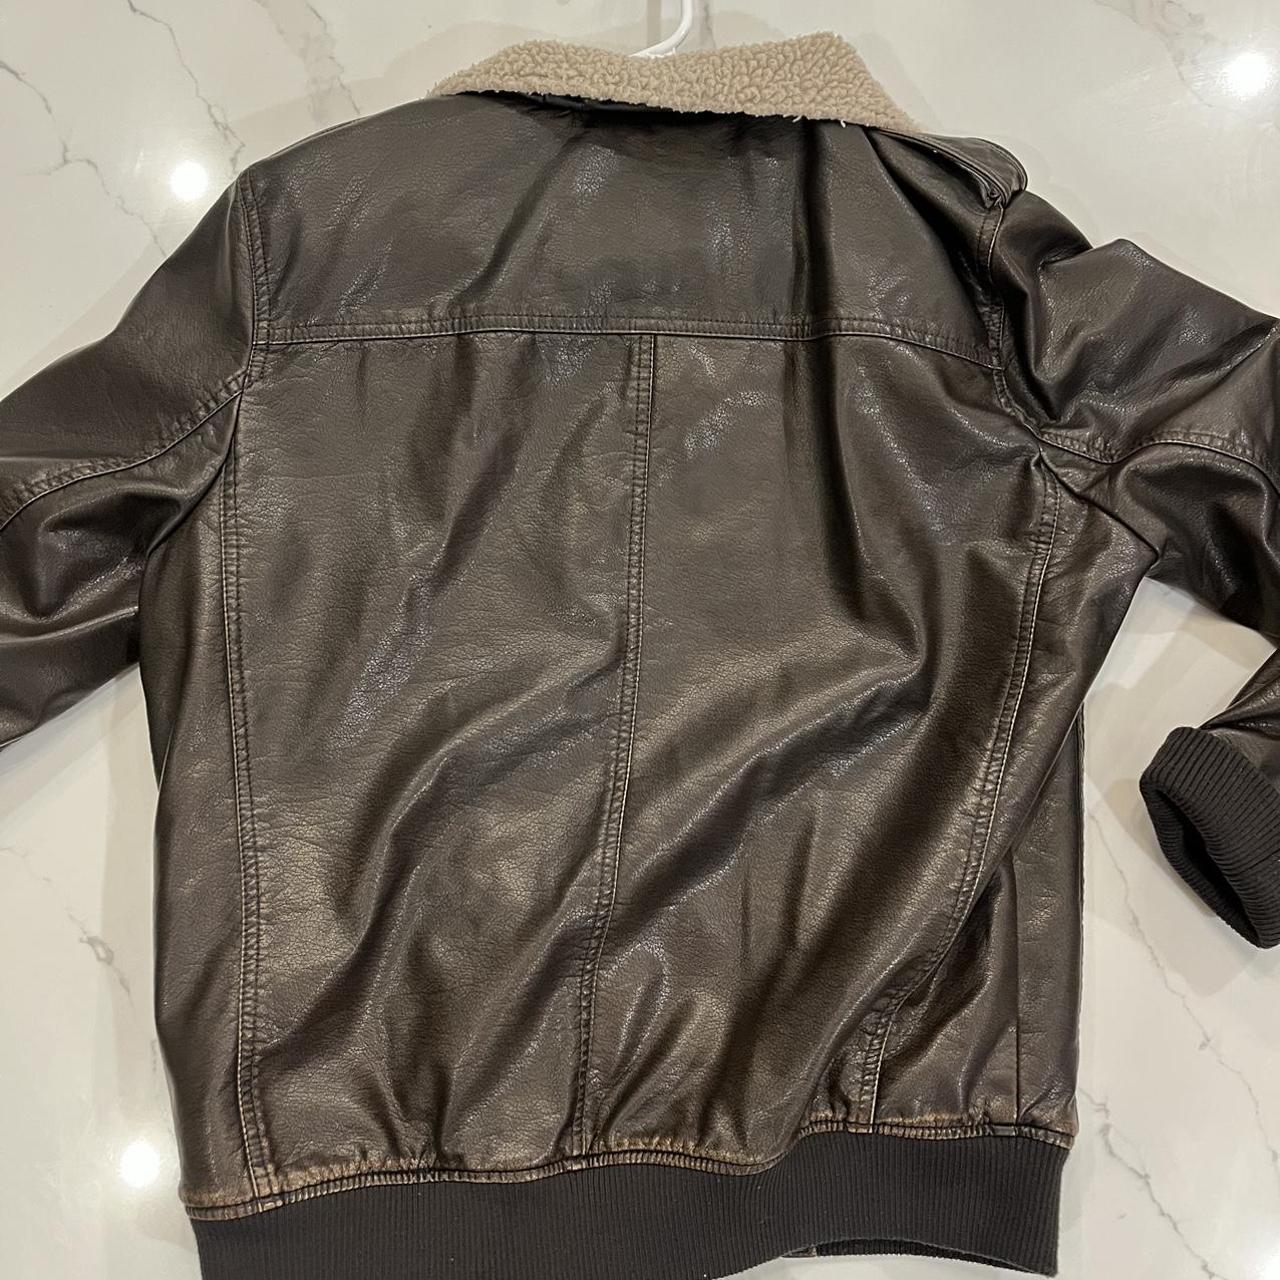 Levi’s Brown Leather Jacket - vintage 1930 biker... - Depop